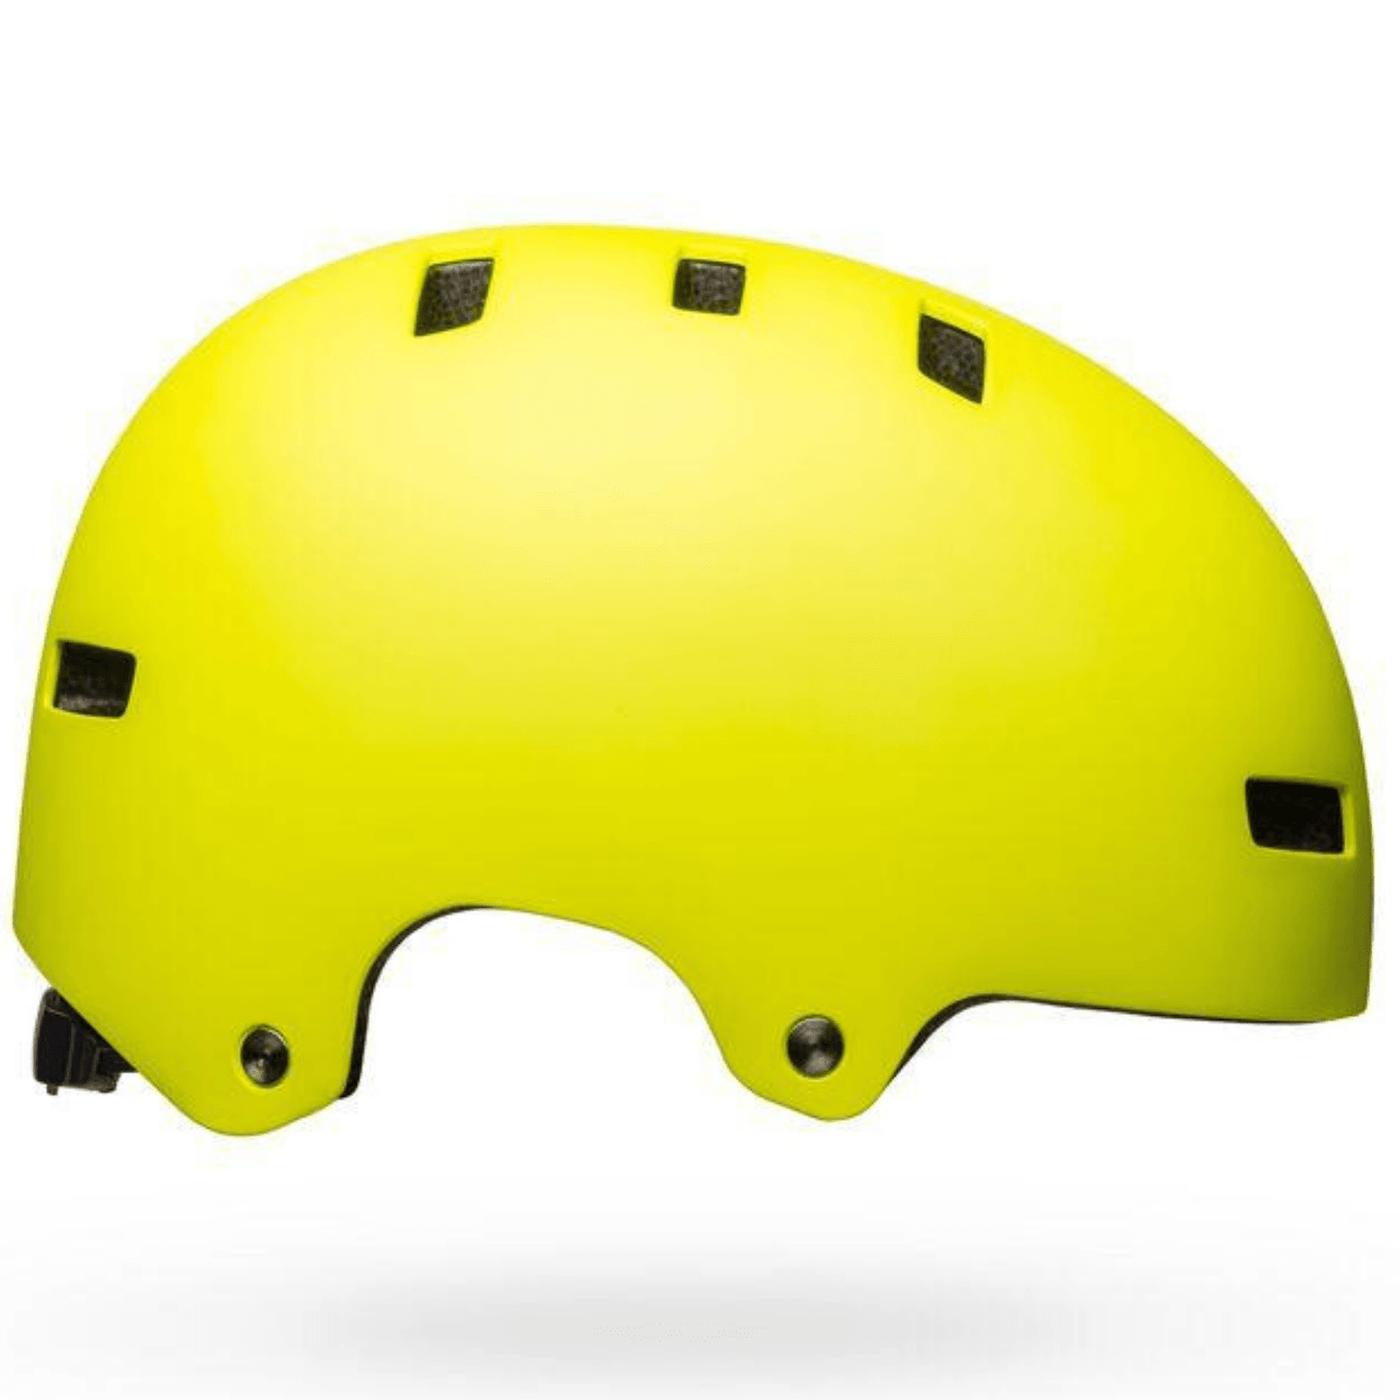 Bell Helmet Local - Matte Hi-Viz